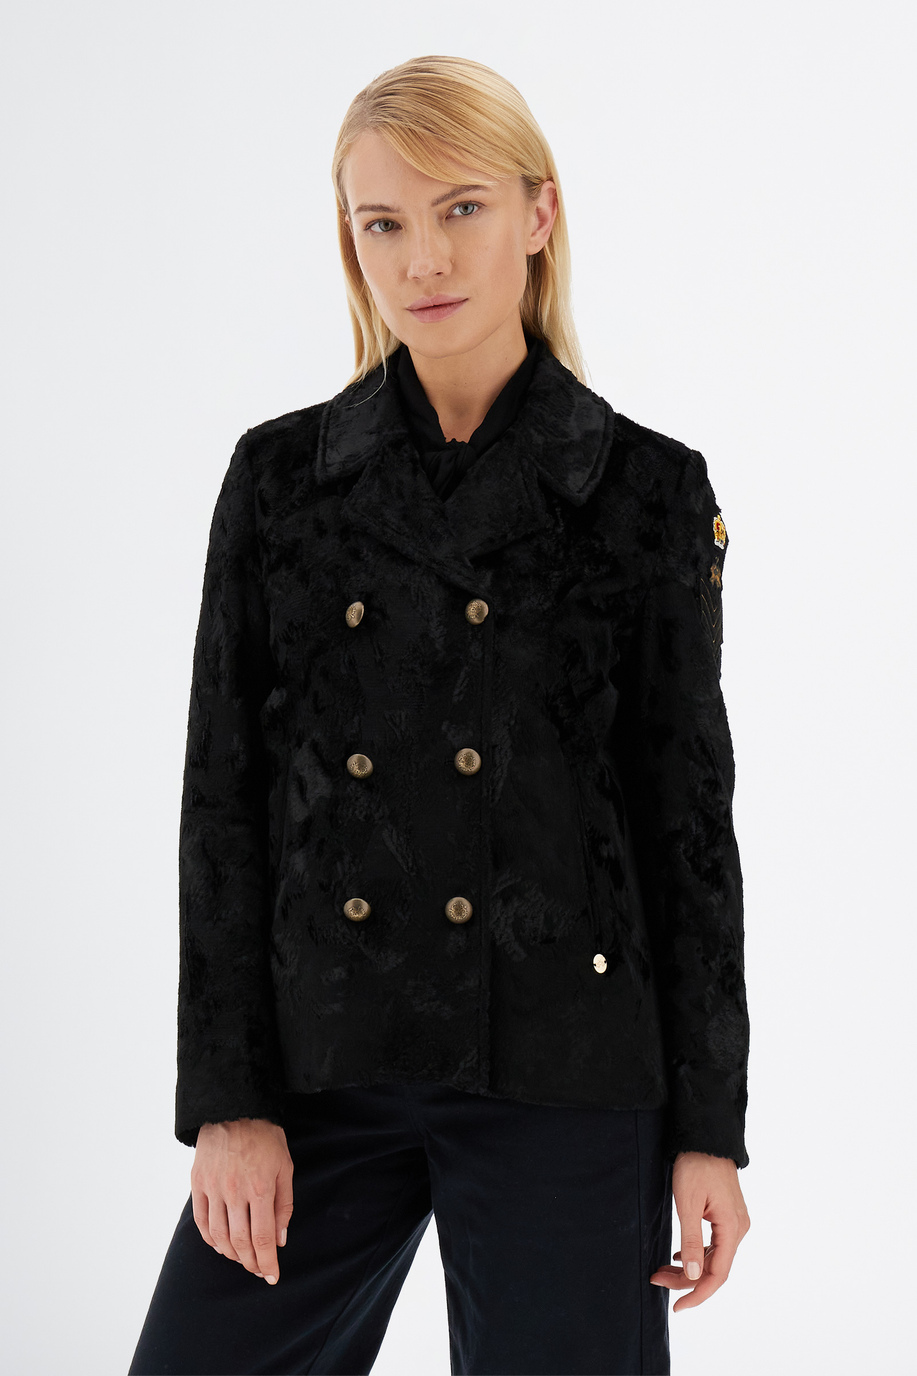 Giacca donna a maniche lunghe England con pelliccia - Look invernali per lei | La Martina - Official Online Shop